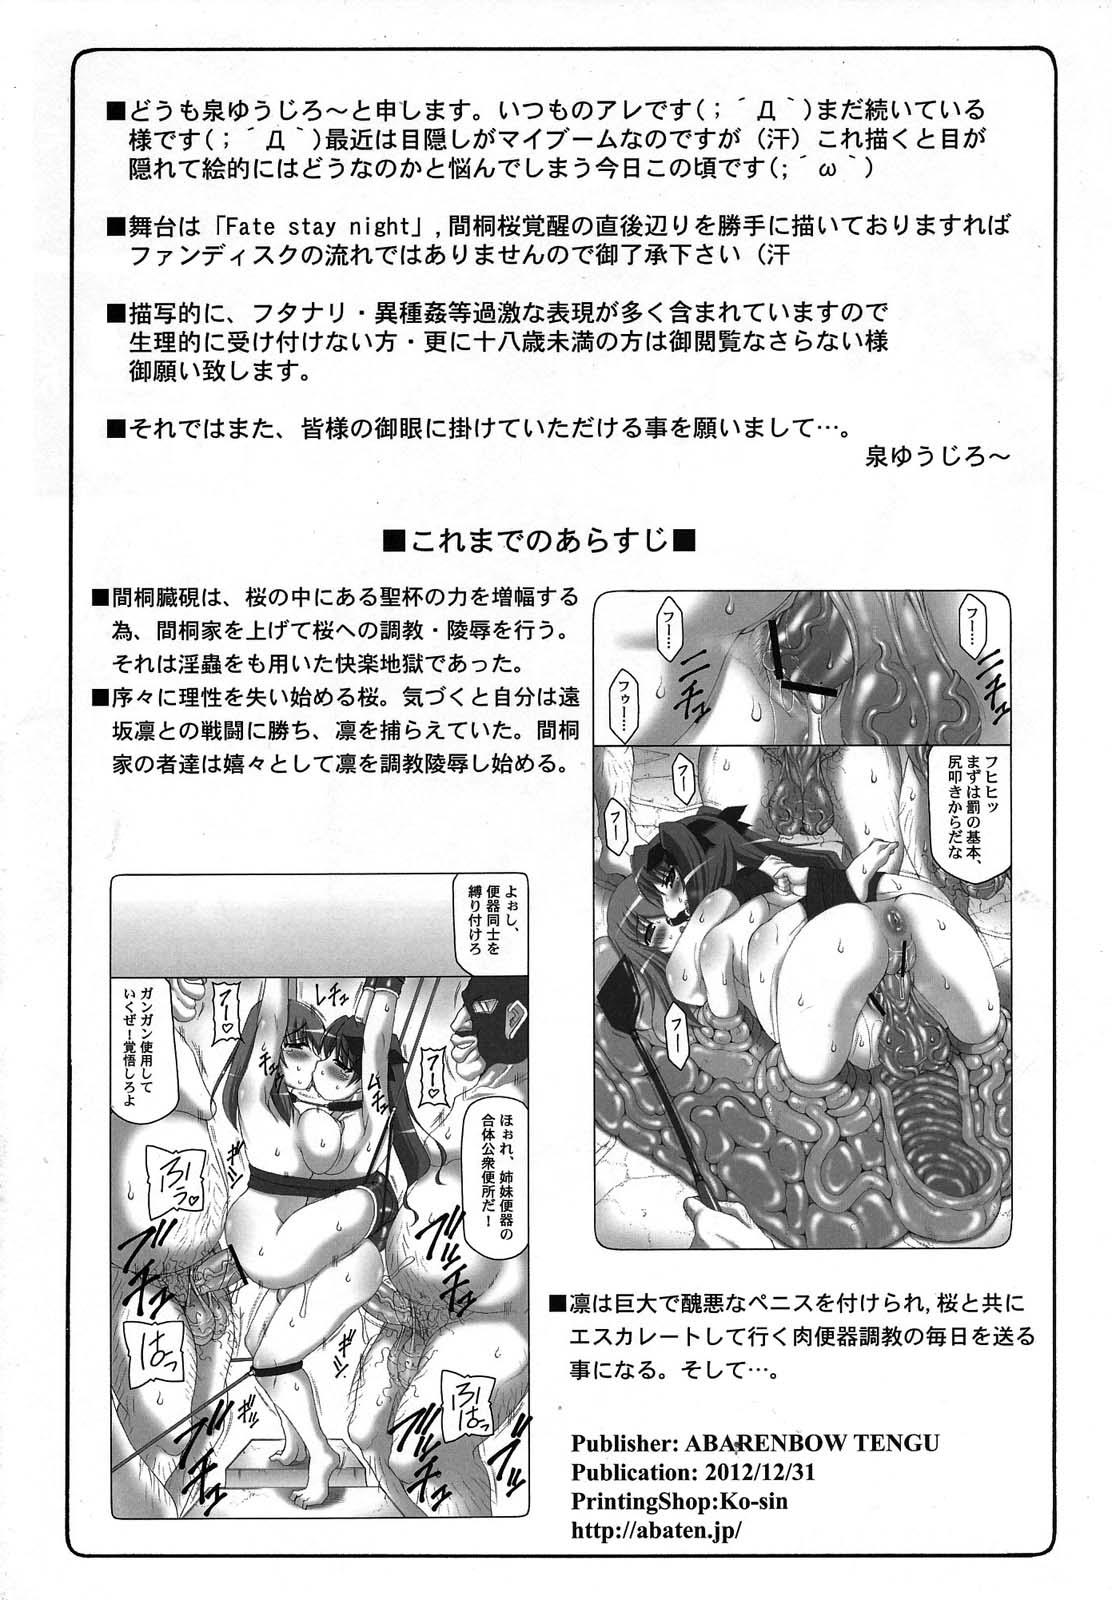 Piss Kotori 9 - Fate stay night Teenxxx - Page 3